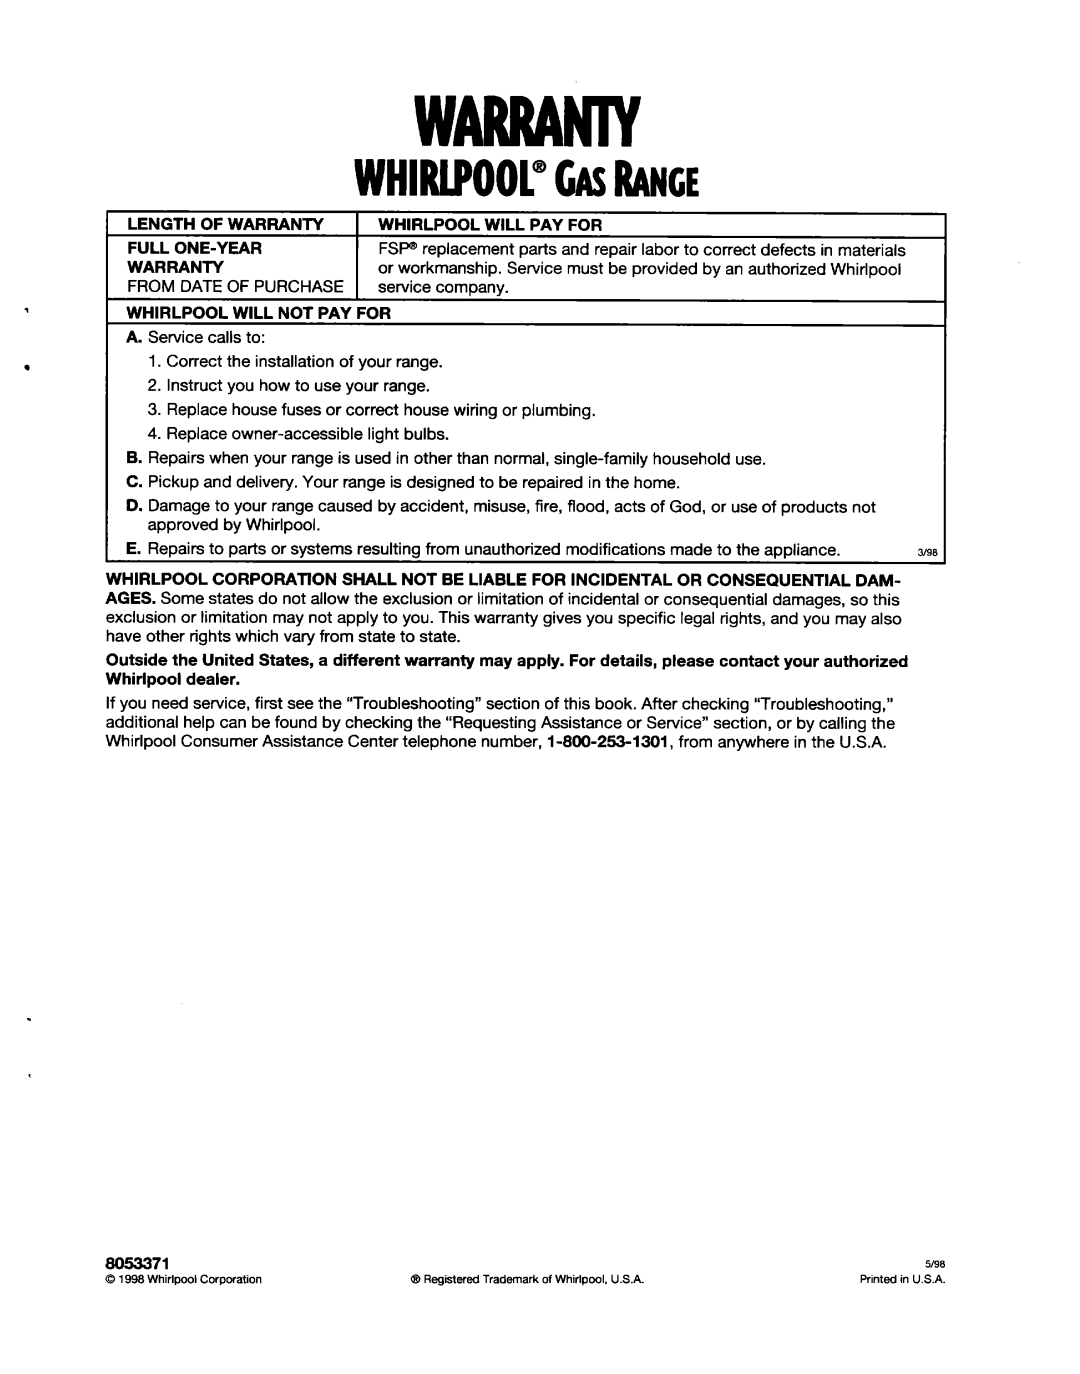 Whirlpool SF31OBEG warranty Warranty, WHIRlPOOl@GASRANGE 